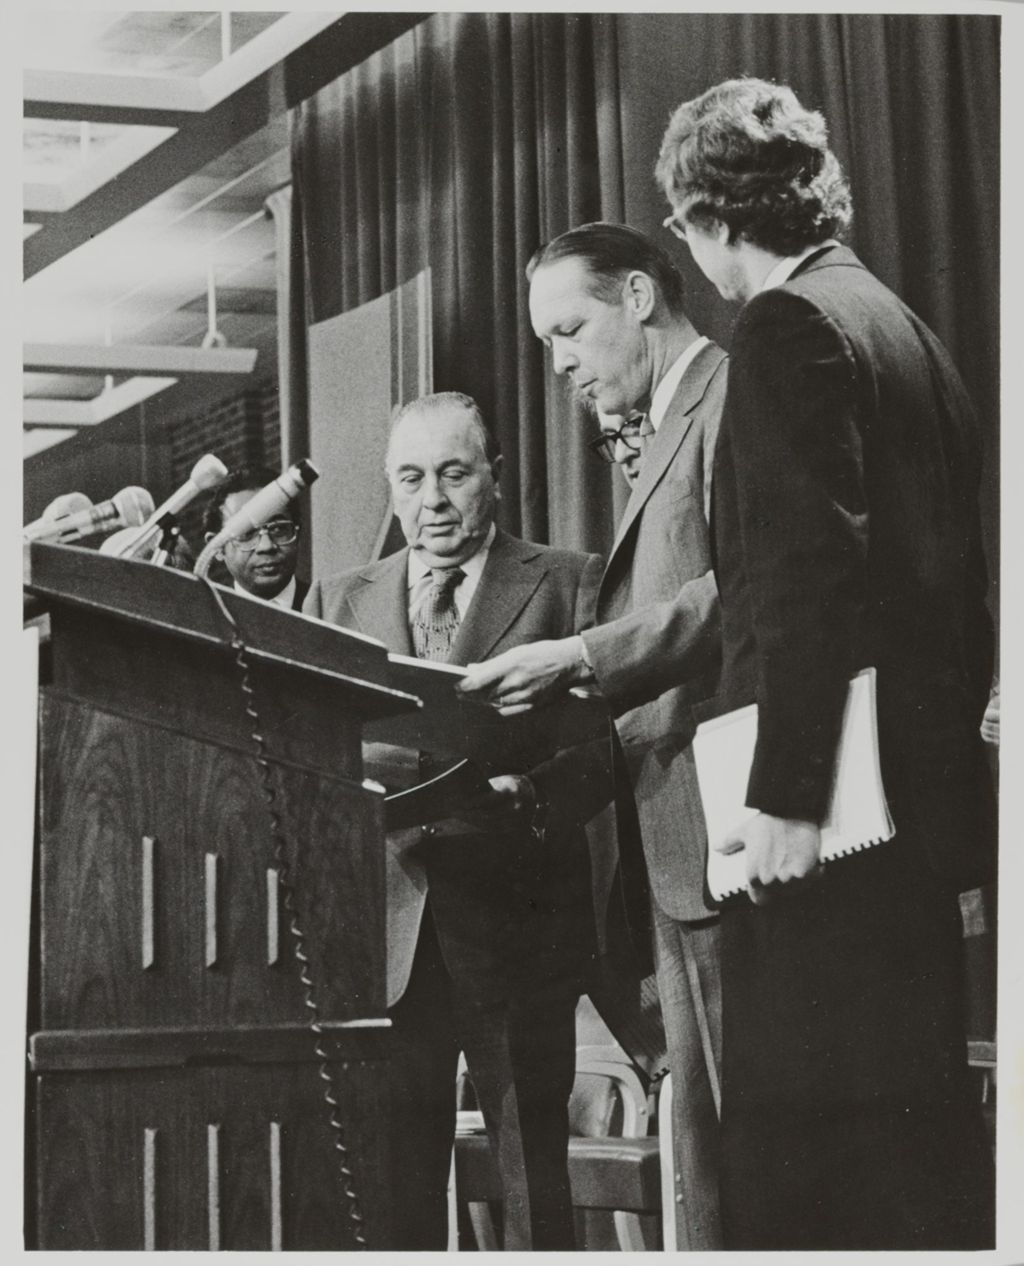 Mayor Richard J. Daley and President John E. Corbally at the Decennial Ceremony